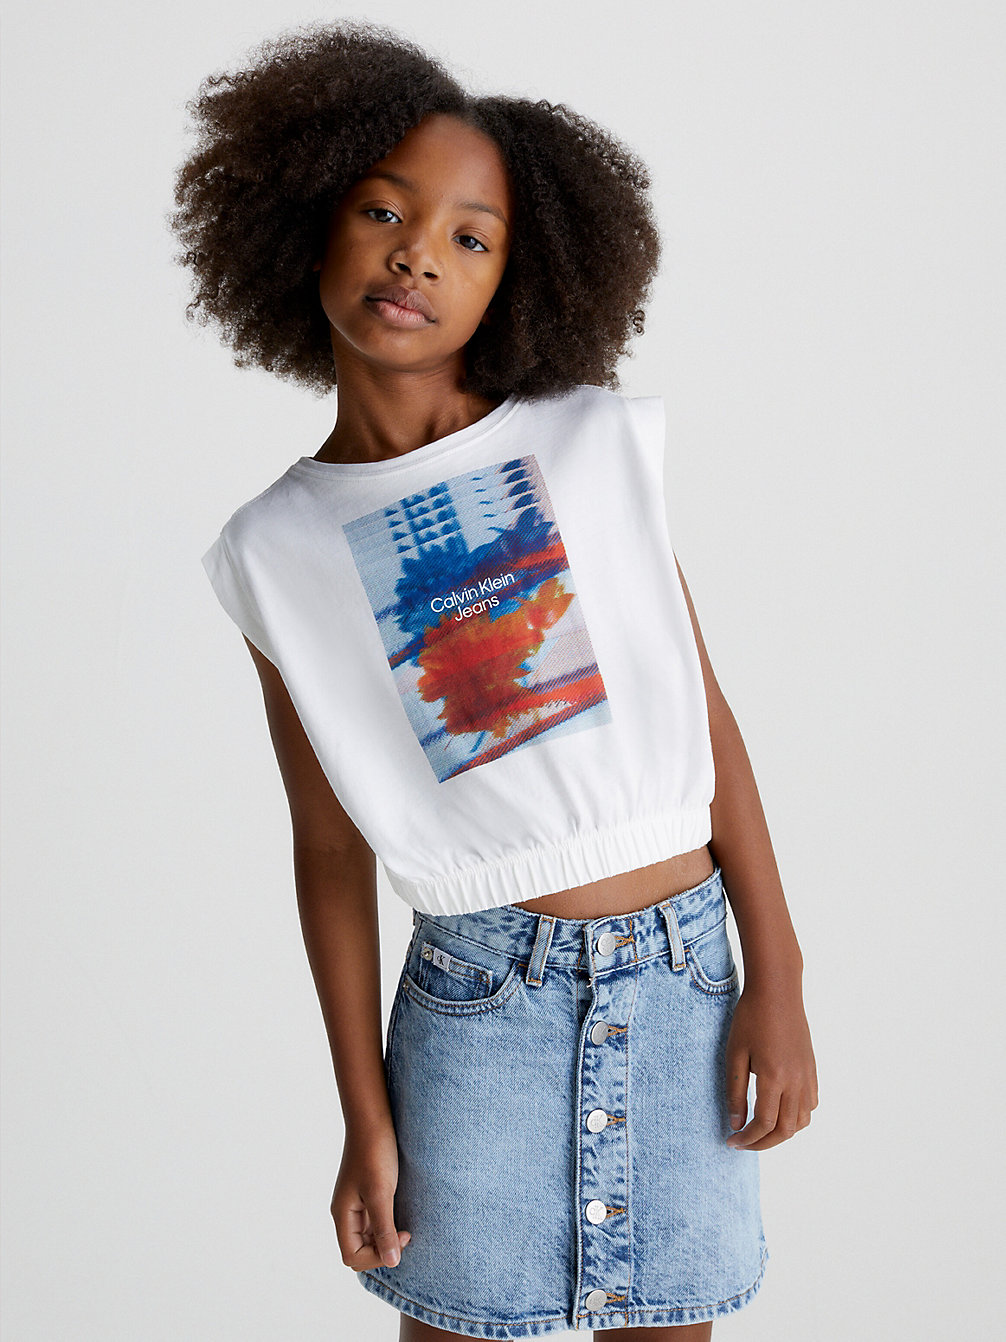 BRIGHT WHITE Organic Cotton Graphic T-Shirt undefined girls Calvin Klein